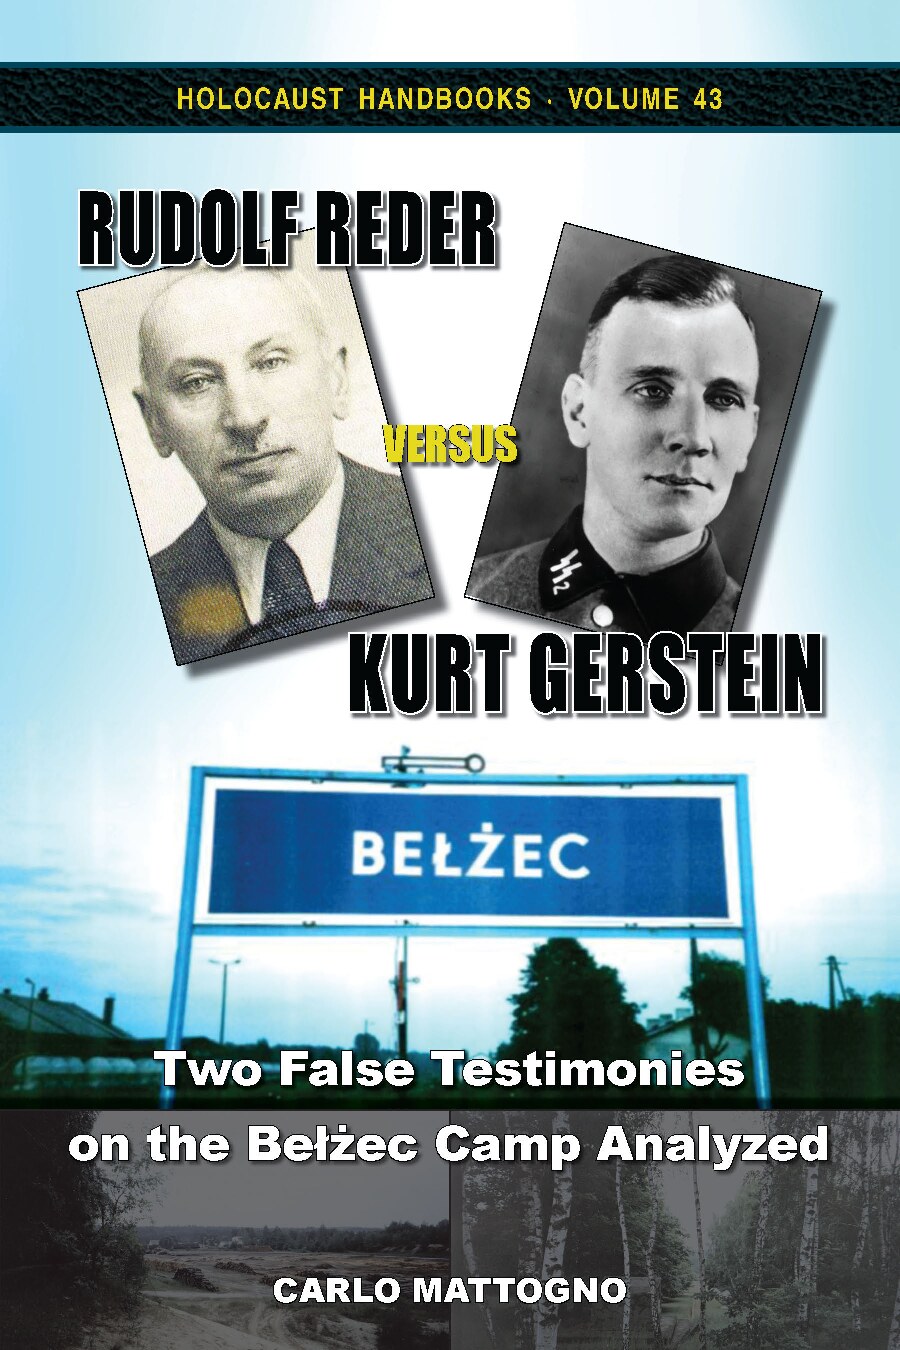 Rudolf Reder versus Kurt Gerstein